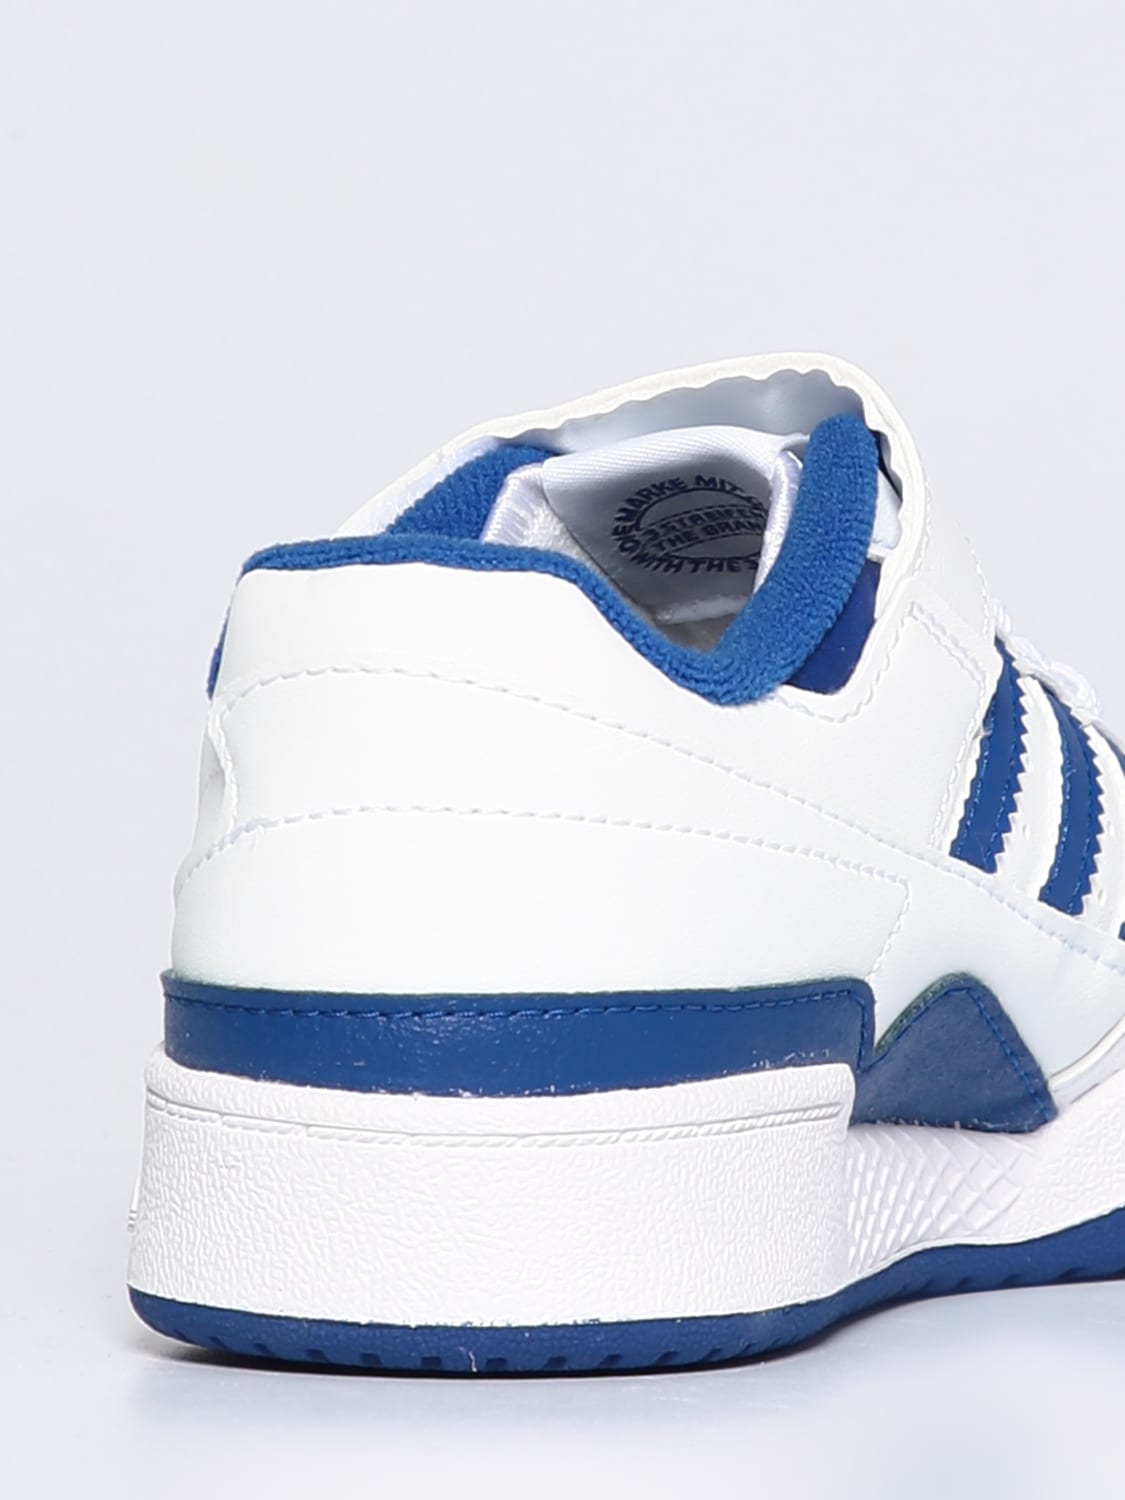 Minimaal optellen samenzwering ADIDAS ORIGINALS: Jungen Schuhe - Weiß | Adidas Originals Schuhe FY7978  online auf GIGLIO.COM